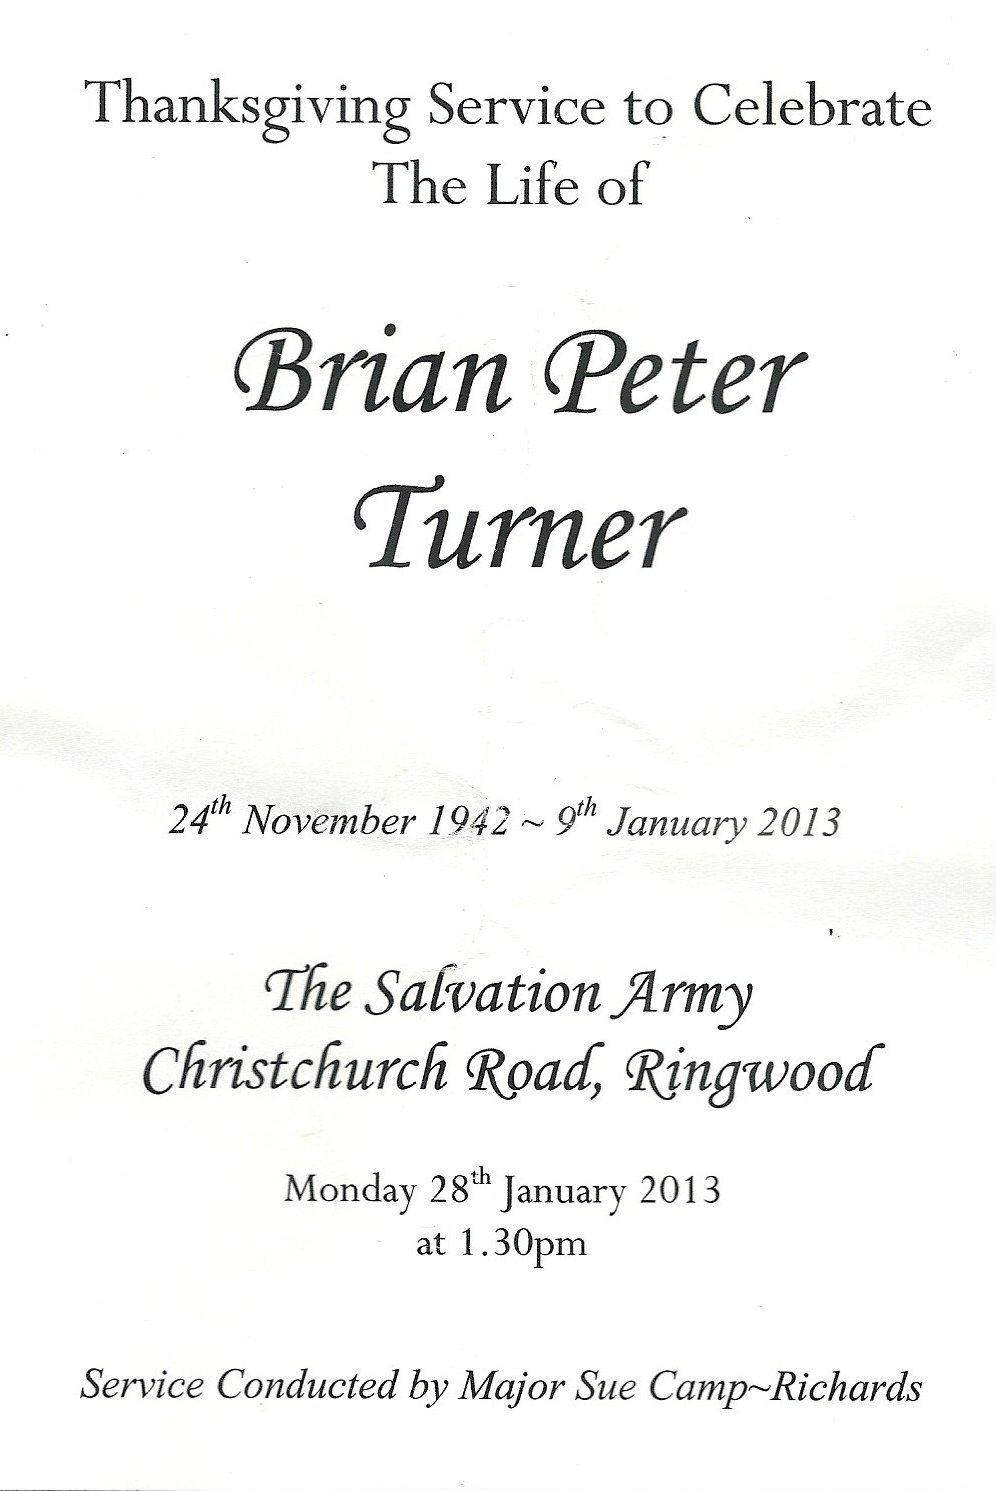 Brian Peter Turner.